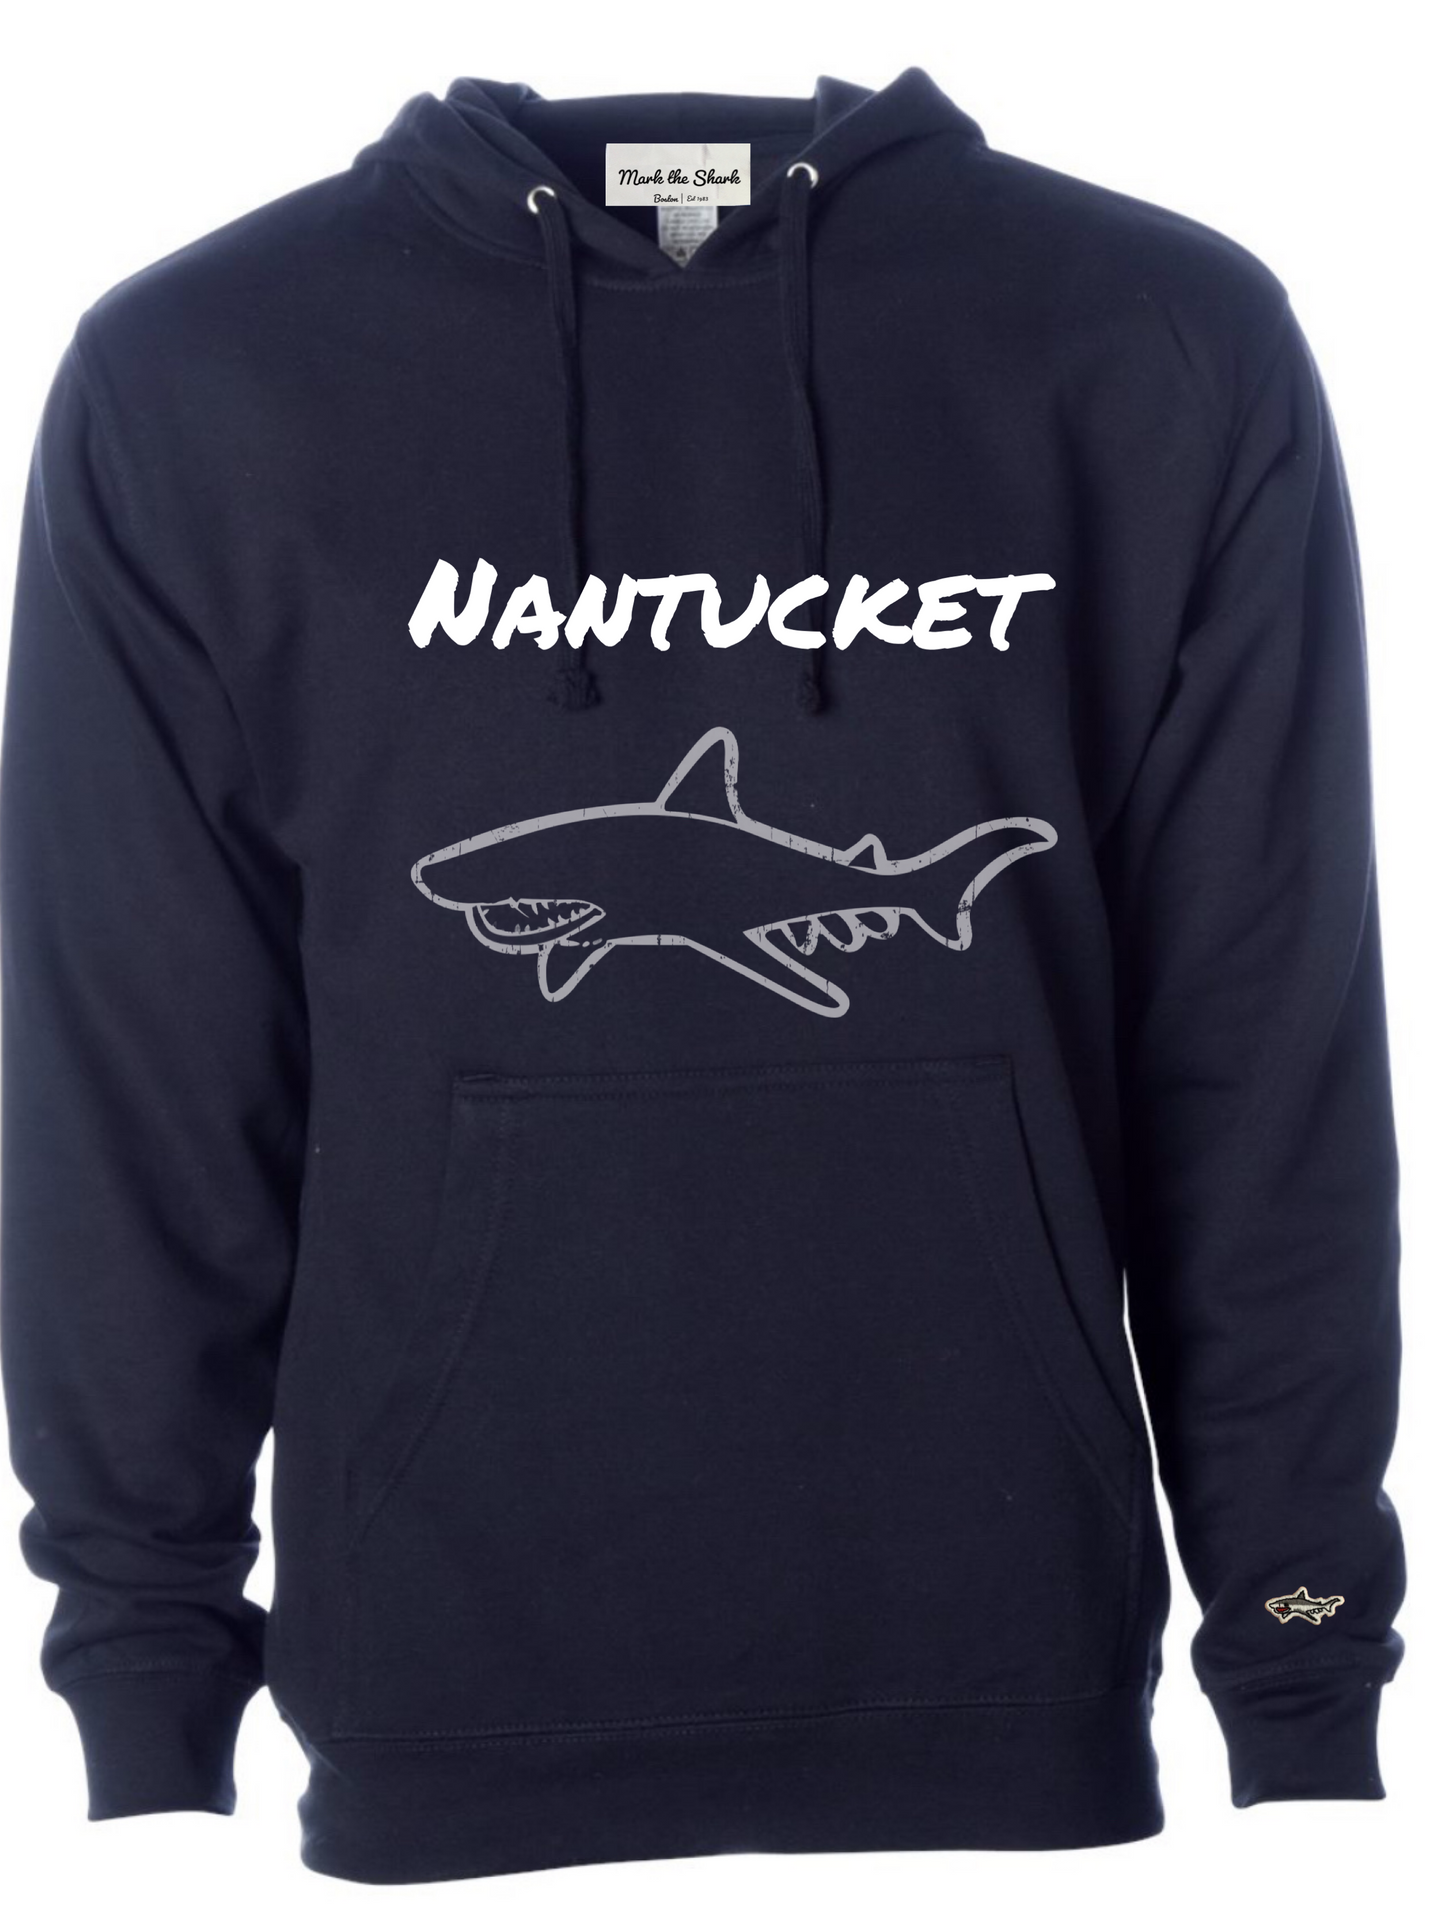 Nantucket Hoodie